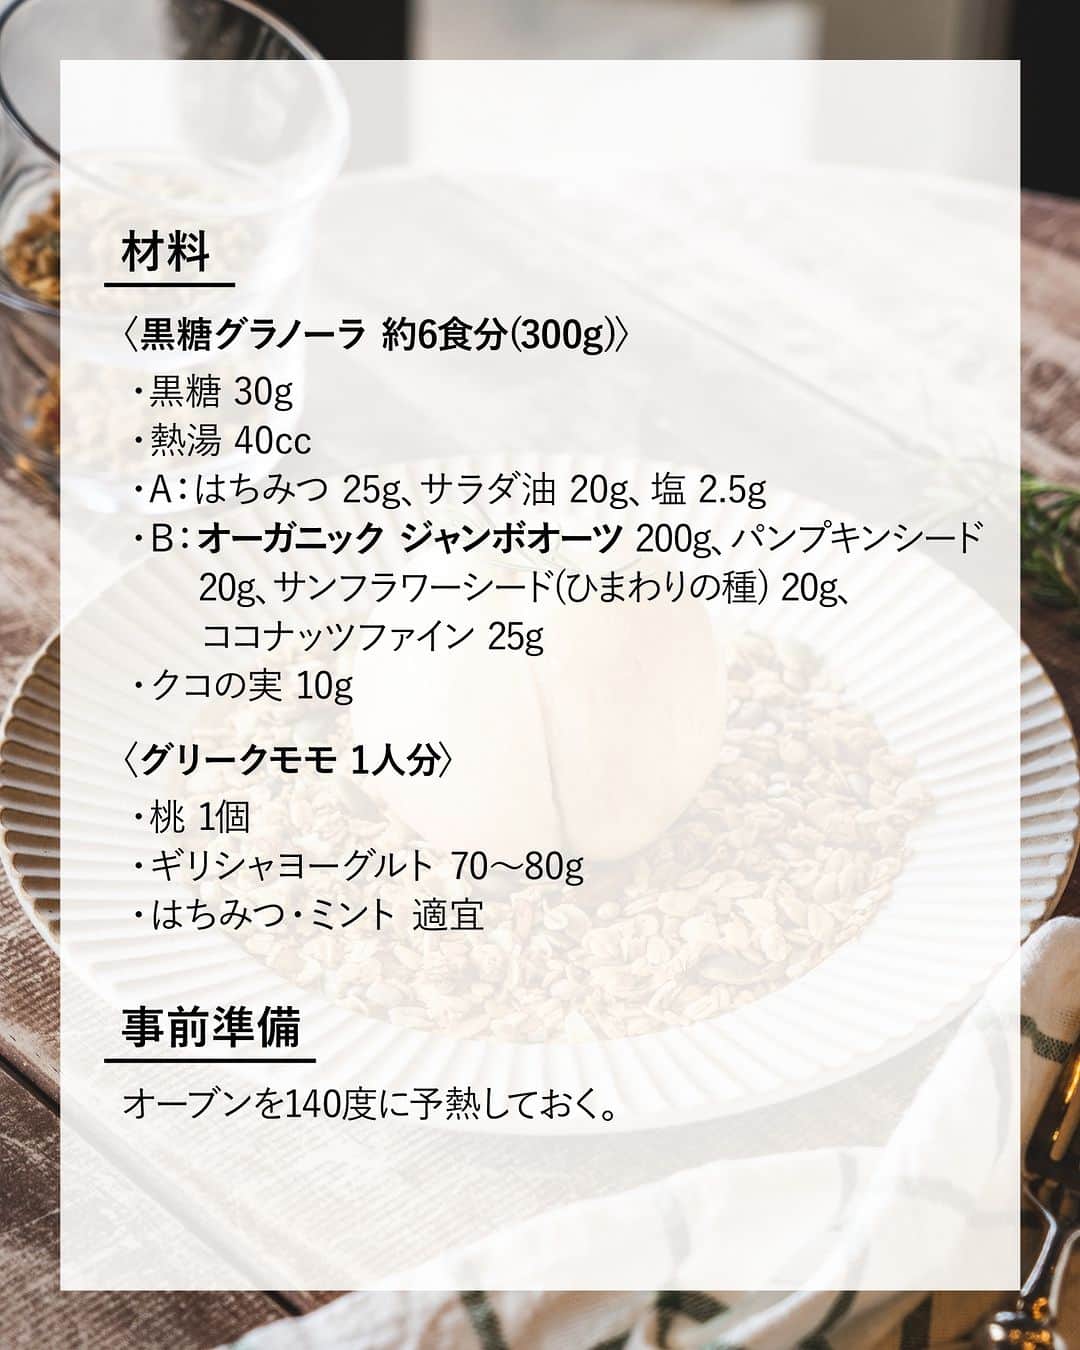 キタノ商事株式会社さんのインスタグラム写真 - (キタノ商事株式会社Instagram)「食べてみたい！と思ったらコメント欄に「🍑」作ってみたい！と思ったら「🇬🇧」で教えていただけると嬉しいです♡  🍑グラノーラと桃のおやつ🍑 🇬🇧アララ[オーガニック ジャンボオーツ] 数年前から韓国のカフェスイーツとして定番化している〈グリークモモ〉試したことはありますか？  見たことはあるけれど実際は試したことはないという方も多くいらっしゃるかと思います。オートミールで作る黒糖グラノーラのグリークモモは、試してみないともったいないくらいに、相性抜群です。桃のシーズンが終わる前にぜひお試しください🍑✨  🍑 🇬🇧アララ[オーガニック ジャンボオーツ] 黒糖グラノーラのグリークモモ  〈材料・黒糖グラノーラ 約6食分(300g)〉 ・黒糖 30g ・熱湯 40cc ・A：はちみつ 25g、サラダ油 20g、塩 2.5g ・B：オーガニック ジャンボオーツ 200g、パンプキンシード 20g、サンフラワーシード(ひまわりの種) 20g、ココナッツファイン 25g ・クコの実 10g  〈材料・グリークモモ 1人分〉 ・桃 1個 ・ギリシャヨーグルト 70～80g ・はちみつ・ミント 適宜  〈事前準備〉 ・オーブンを140度に予熱しておく  〈作り方〉 1.グラノーラを作る： 大きめのボウルに黒糖と熱湯を入れ、黒糖を混ぜ溶かす。 2.1にAを加え混ぜる。 3.2にBを加えよく混ぜる。 4.鉄板にオーブンシートを敷き、全体に火が通るように3をまんべんなく広げ、140度に予熱したオーブンを35分でセット。15分焼く。 5.天板を取り出し、手早くムラなく木べらなどで混ぜ、15分焼く。 6.5と同じように手早くムラなく混ぜ、5分焼く。 7.全体的に香ばしく色づきサラサラでカリっと焼きあがれば出来上がり。 8.よく冷ましてクコの実を混ぜて完成 9.グリークモモを作る： 包丁で桃の上部から切り込みを入れ、スプーンなどで種を取り除く。 10.桃を沸騰したお湯に20秒浸したら氷水の入ったボウルにうつし、取り出す。 11.ギリシャヨーグルトを桃に詰め、桃の皮をきれいに剥いたら、グラノーラを敷いたお皿に、詰めた部分を下にして乗せる。はちみつやミントをお好みでトッピングして完成。  〈NOTES〉 ・焼き時間はご家庭のオーブンに合わせて必要に応じて調整してください。 ・塊状の黒糖を使う場合は、事前に細かく砕いておくと溶けやすいです。 ・天板が複数枚入るオーブンの場合は下段で焼いてください。 ・工程5,6で天板の上で混ぜ返す際、オーブンシートの端を持ちあげると混ぜやすいです。 ・倍量のグラノーラを作る場合はオーブンを140度1時間で設定し、同じ要領で15分ごとに3回混ぜて作成します。 ・ ・ 大粒のオートミールがザクザクと香ばしい、混ぜて焼くだけの簡単グラノーラ。グリークモモとの相性がとにかく抜群の黒糖グラノーラです。  🍑 ＼食べてみたらぜひ教えてください／ 素敵な投稿をこちらのアカウントではご紹介させていただいております。 @kitano_kk と #アララ #オーガニックジャンボオーツ のタグをつけて投稿してみてくださいね。ストーリーズでもフィードでもどちらでも🙆です♡みなさまの投稿をお待ちしております。  🍑 【販売店情報】 「ヨドバシ.com」にて🇬🇧アララ［オーガニック ジャンボオーツ]をお取り扱いいただいております。「オーガニックジャンボオーツ」でチェックしてみてくださいね。 https://www.yodobashi.com/ ※在庫状況は変動するため、在庫がない場合もございます。予めご了承ください。  🍑 -------------- 🇬🇧アララ 世界で初めてオーガニック認定を受けたシリアルブランド【アララ】は1975年、ブレンドの天才であるスミス氏によって、砂糖を加えないミューズリーの最初のレシピが考案され、ロンドンで誕生。サスティナブルに対する企業姿勢が評価され「サスティナブル フード アワード2019」において「サスティナブル パイオニア賞」を受賞。英国のホテルや大手フードチェーンなどでも採用される品質と美味しさを誇るシリアルブランドです。日本では1998年、キタノ商事との出会いにより上陸。 -------------- 🍑  その他のアレンジレシピはハイライトの「オートミールレシピ」から投稿にジャンプいただくか、プロフィールのリンクにある当社ウェブサイト内「アレンジレシピ」でもご覧いただけます。  #アララ #オーガニックジャンボオーツ #イギリス #英国 #グリークモモ #グラノーラ #キタノ商事 #世界のおいしさをキタノから ・ ・ ・ ・ ・ #オートミール #ジャンボオーツ #オーガニックオーツ #オーツ麦 #オートミールレシピ #オートミールアレンジ #輸入食品 #おうちカフェ #レシピあり #桃 #グリーク桃 #桃スイーツ #グリークモモ #アレンジレシピ #手作りスイーツ #オートミールスイーツ #桃レシピ #豊かな食卓 #韓国スイーツ #スイーツレシピ」8月23日 8時00分 - kitano_kk